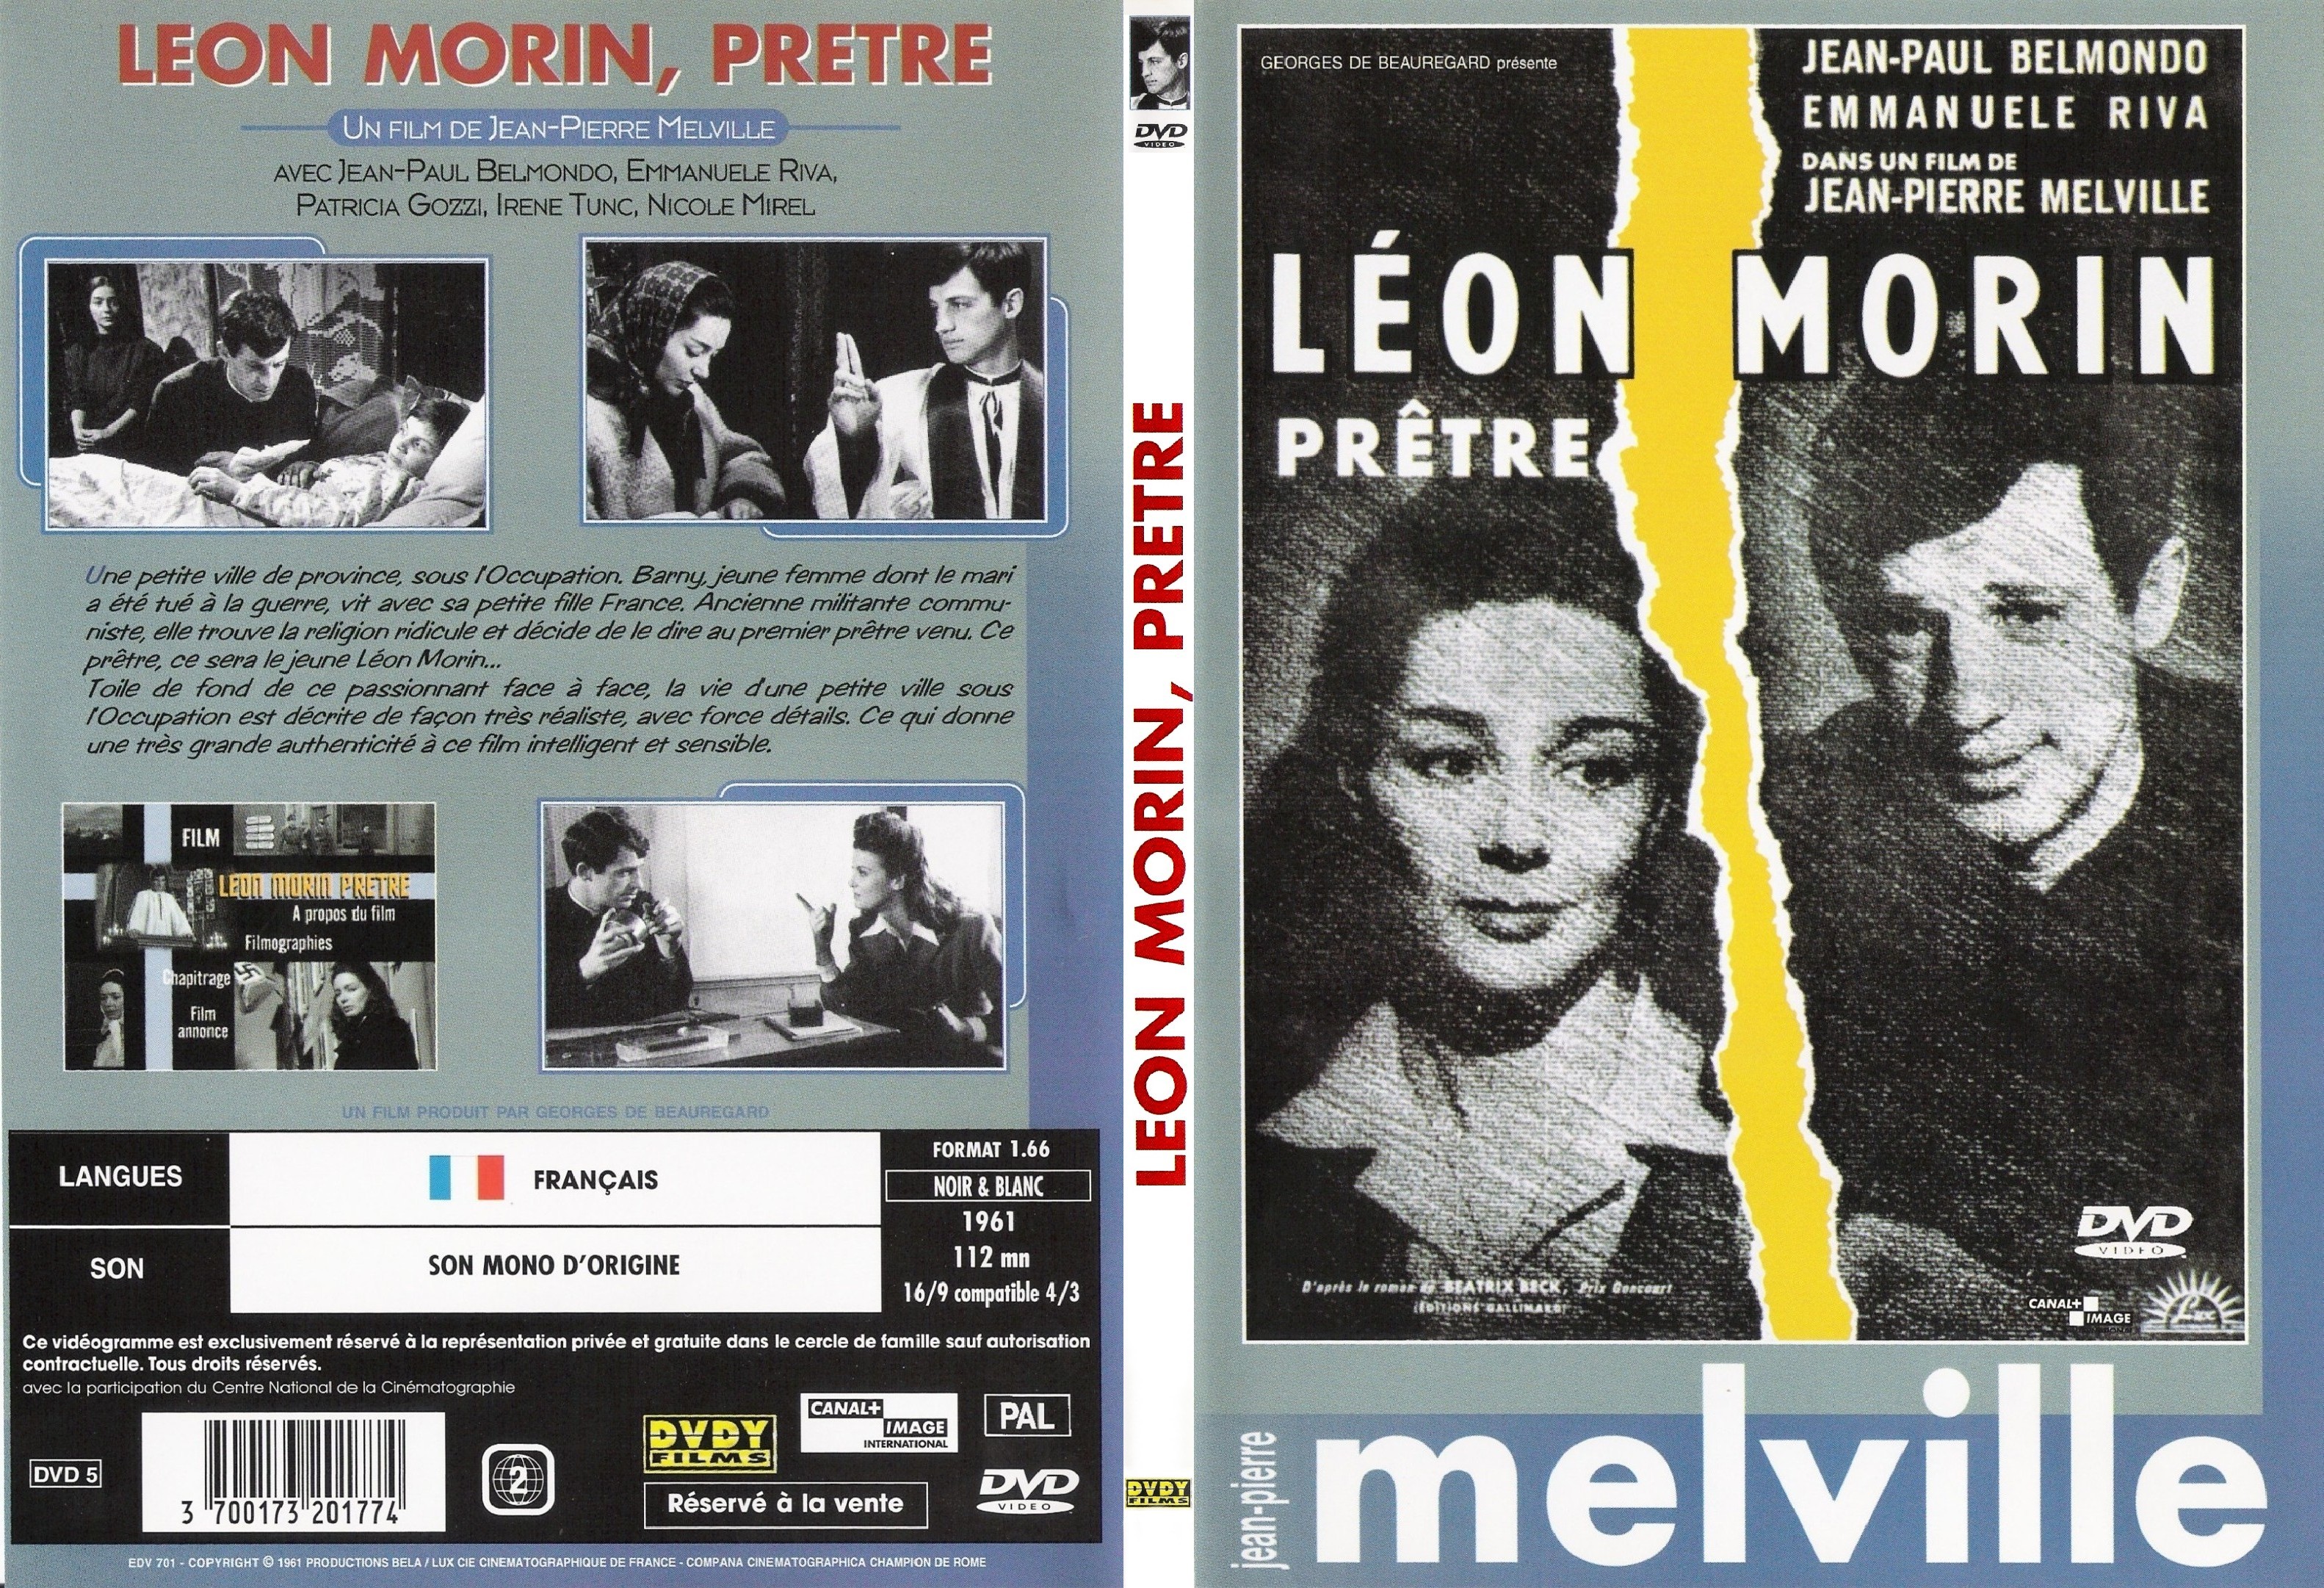 Jaquette DVD Leon Morin pretre - SLIM